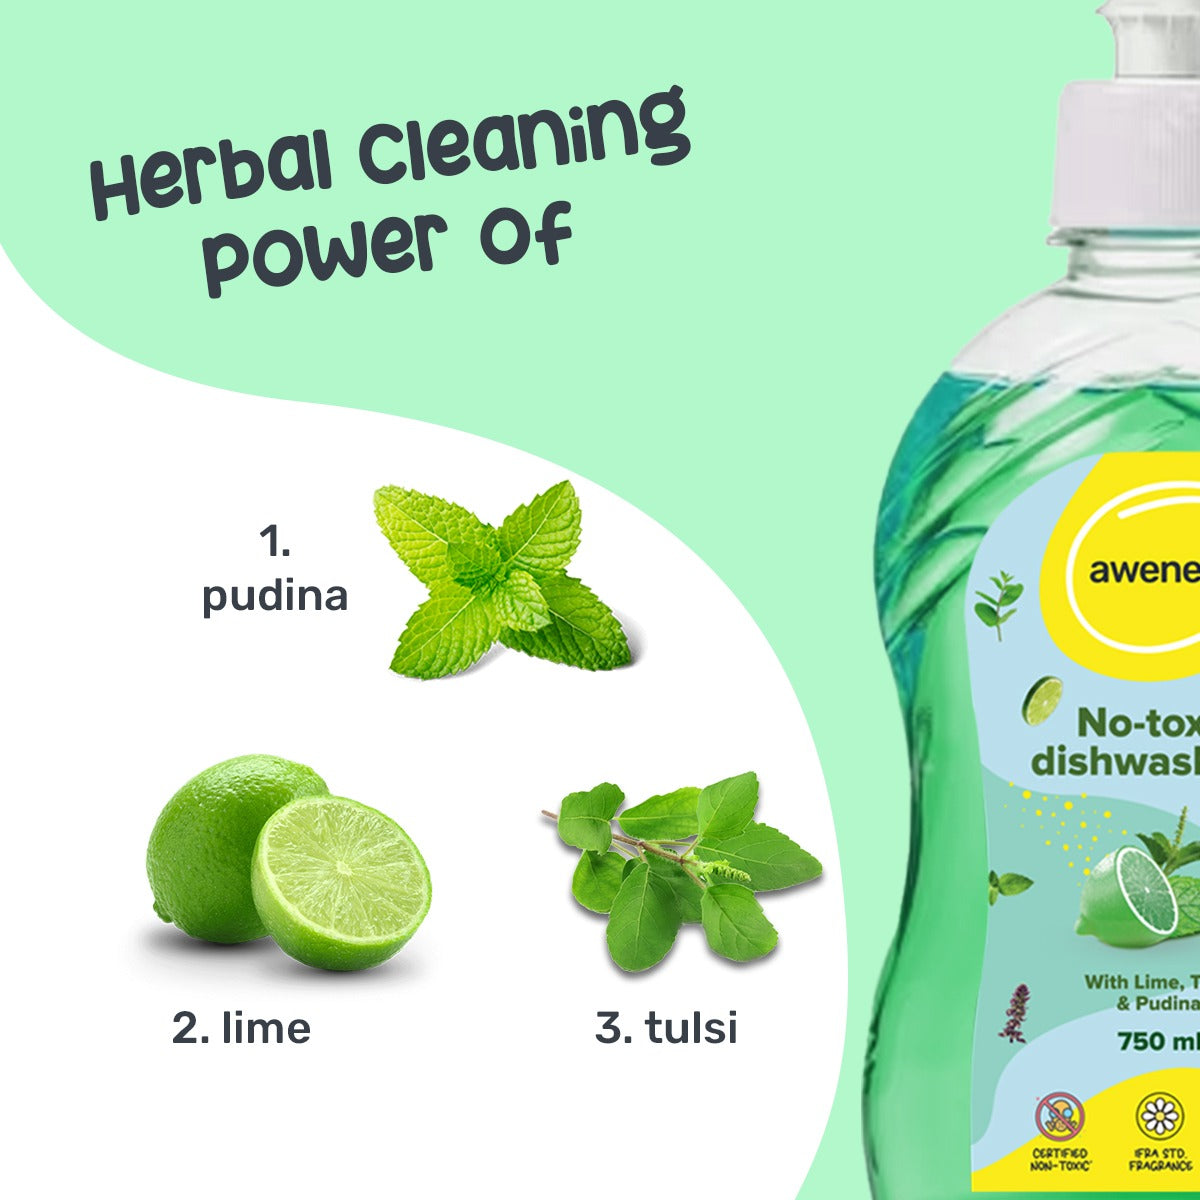 awenest toxin-free, plant-based lime, tulsi and pudina dishwash